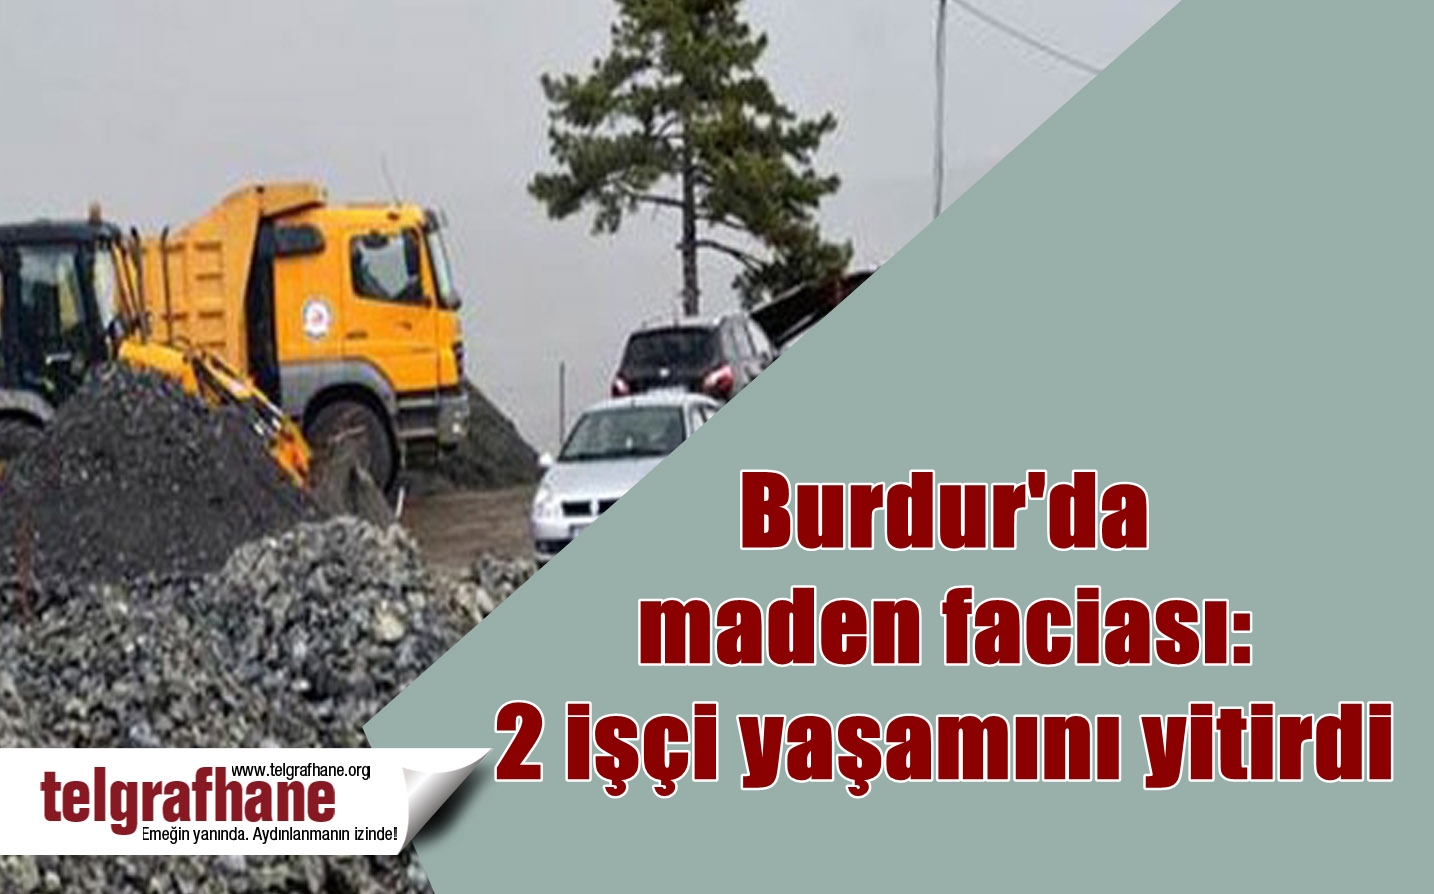 Burdur’da maden faciası: 2 işçi yaşamını yitirdi